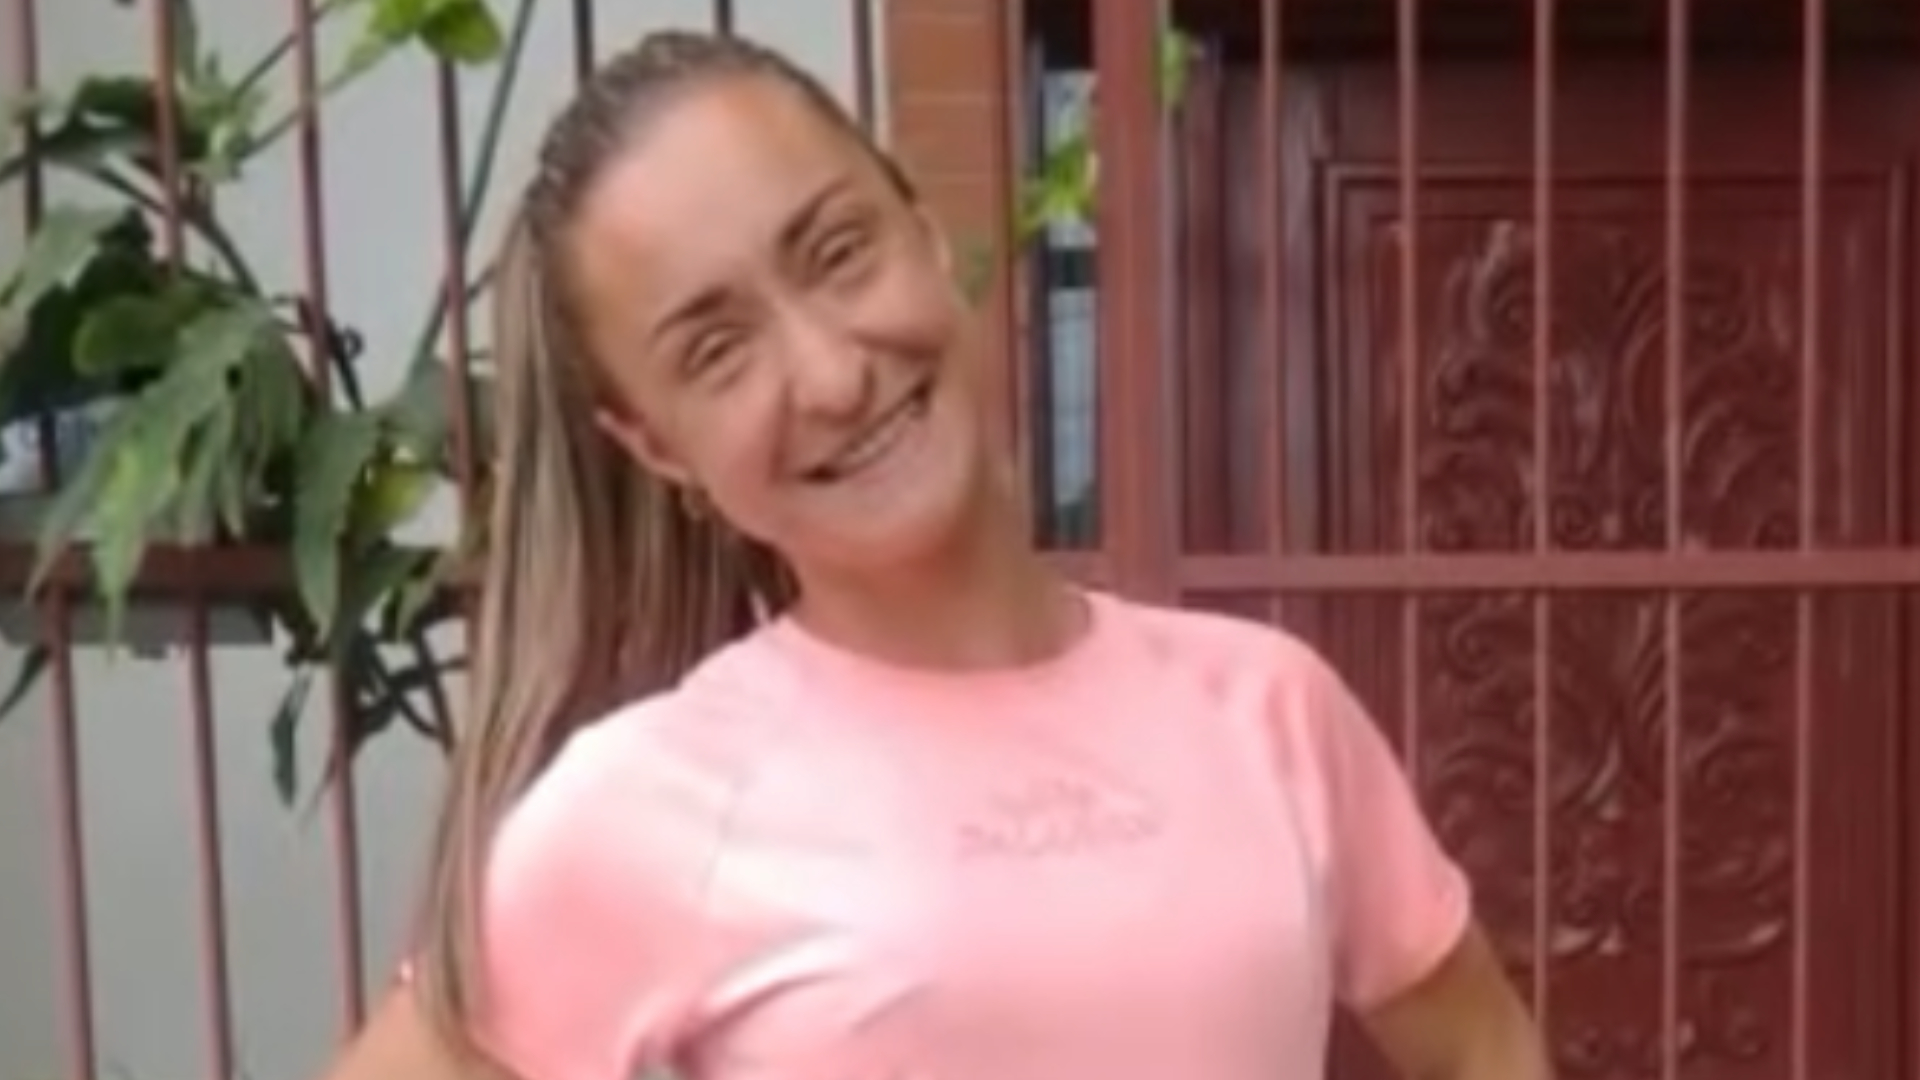 Atleta Luisa Giampaoli morre aos 29 anos no RS, e marido desabafa em vídeo: “Tô indignado com o que fizeram com ela”